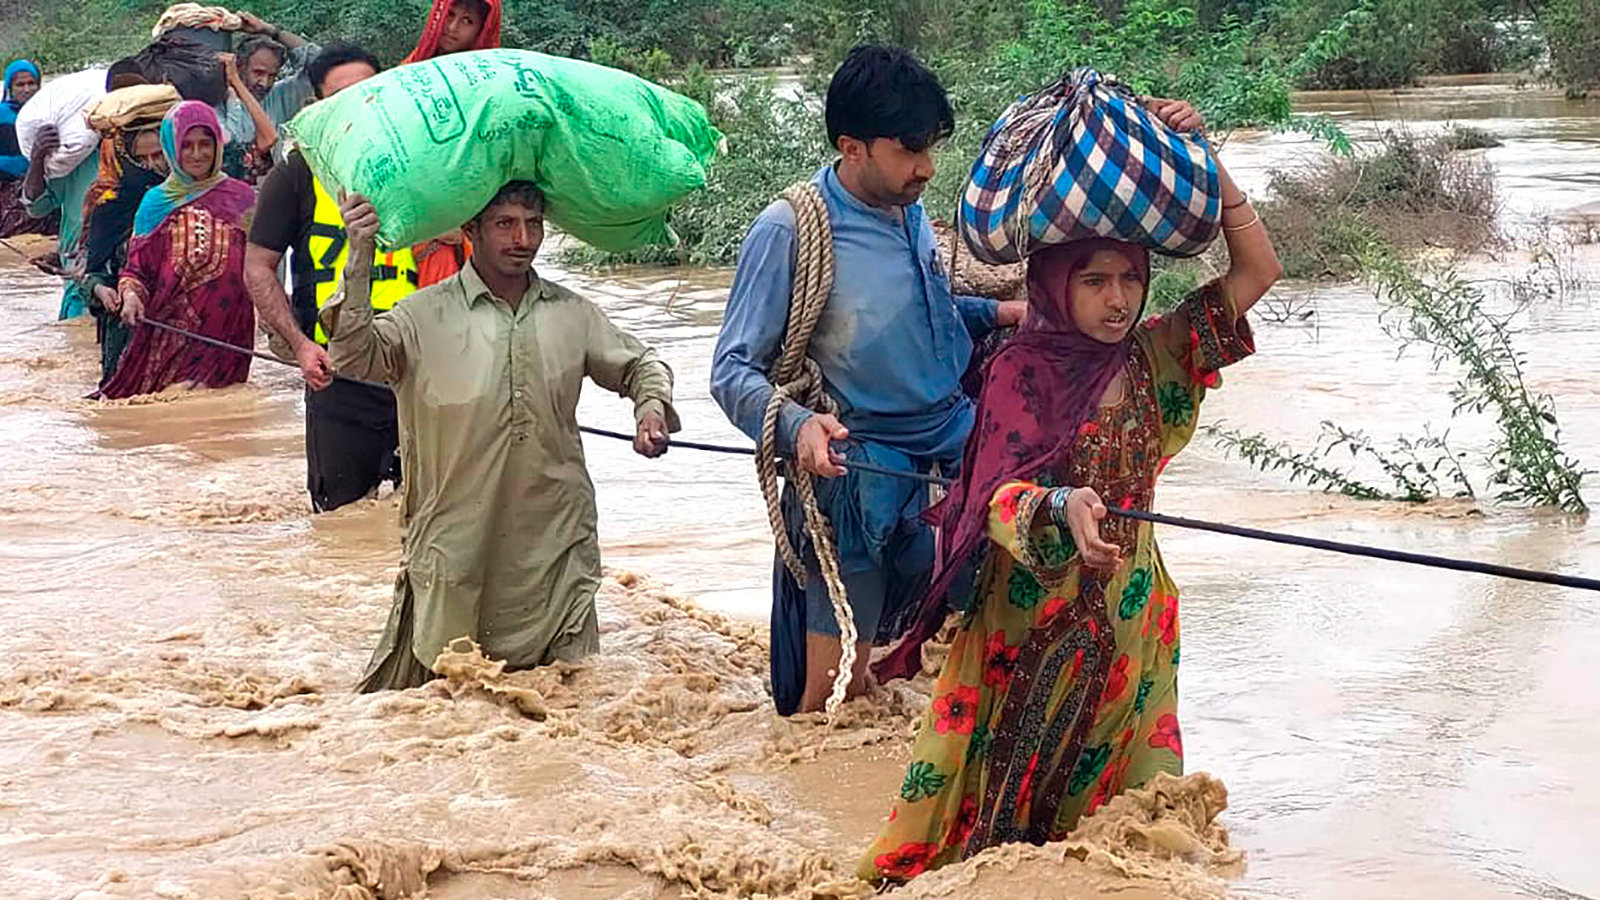 Des Ministres Volontaires de tout le Pakistan donnent des procédés d’assistance spirituelle, des médicaments, de la nourriture et des produits de première nécessité à ceux touchés par les inondations.